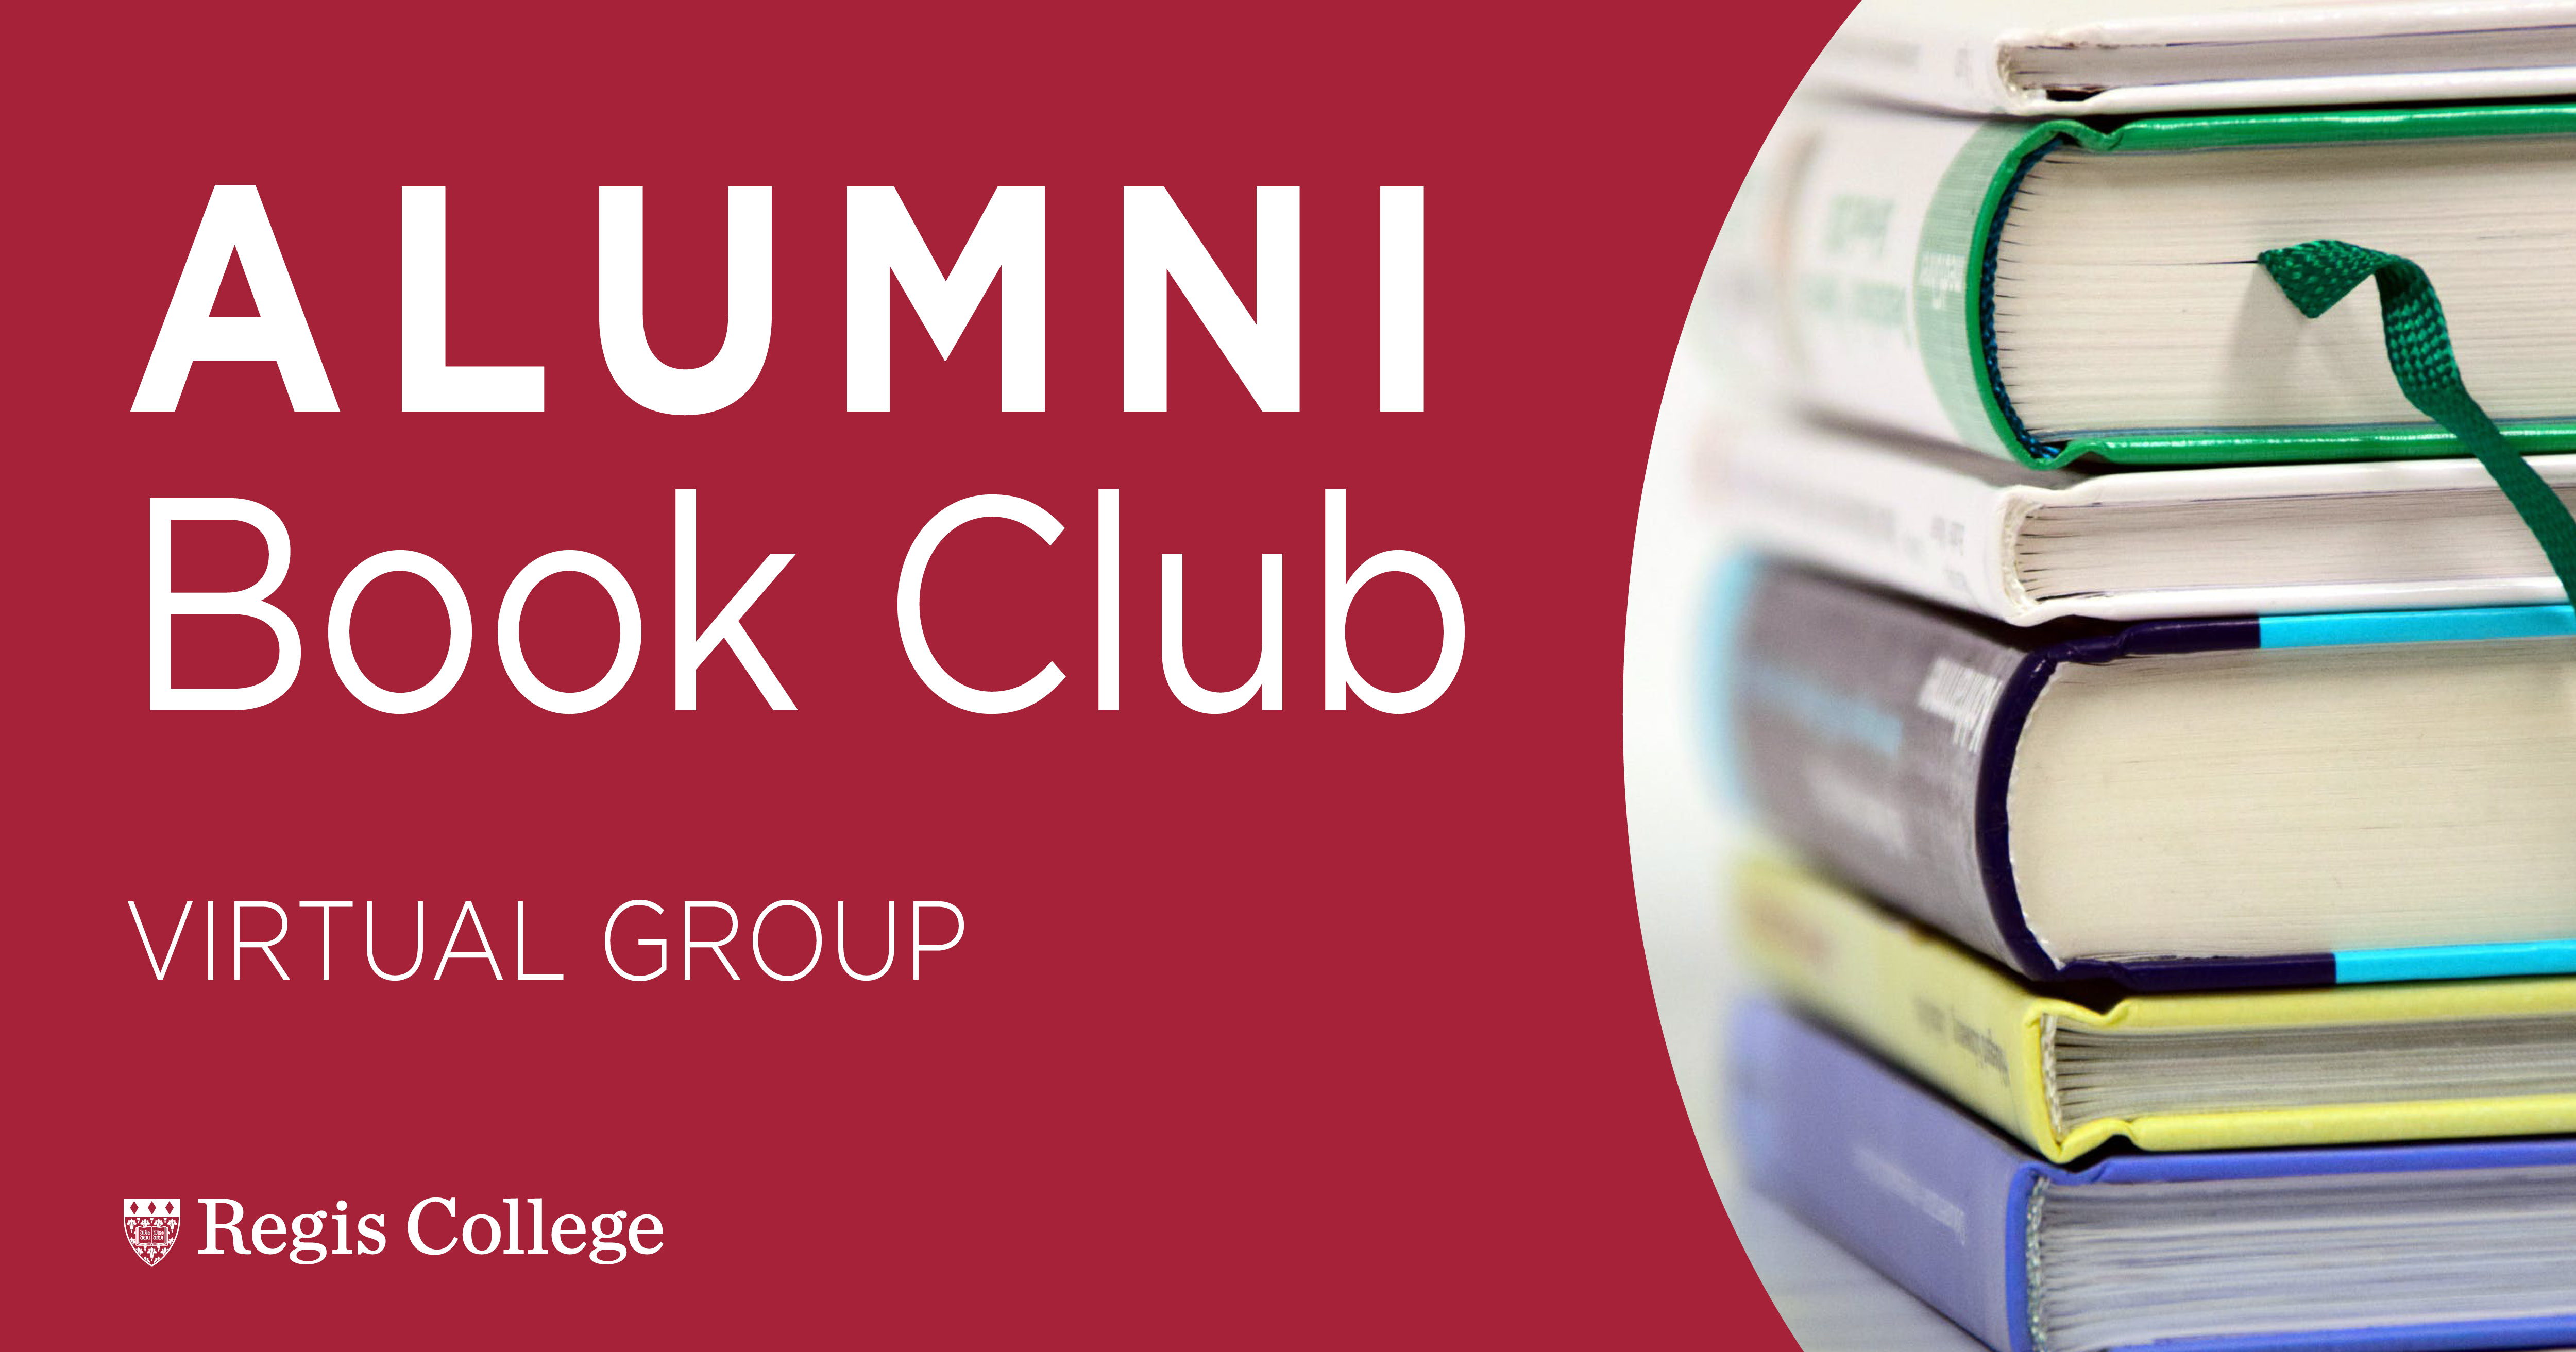 Alumni Book Club